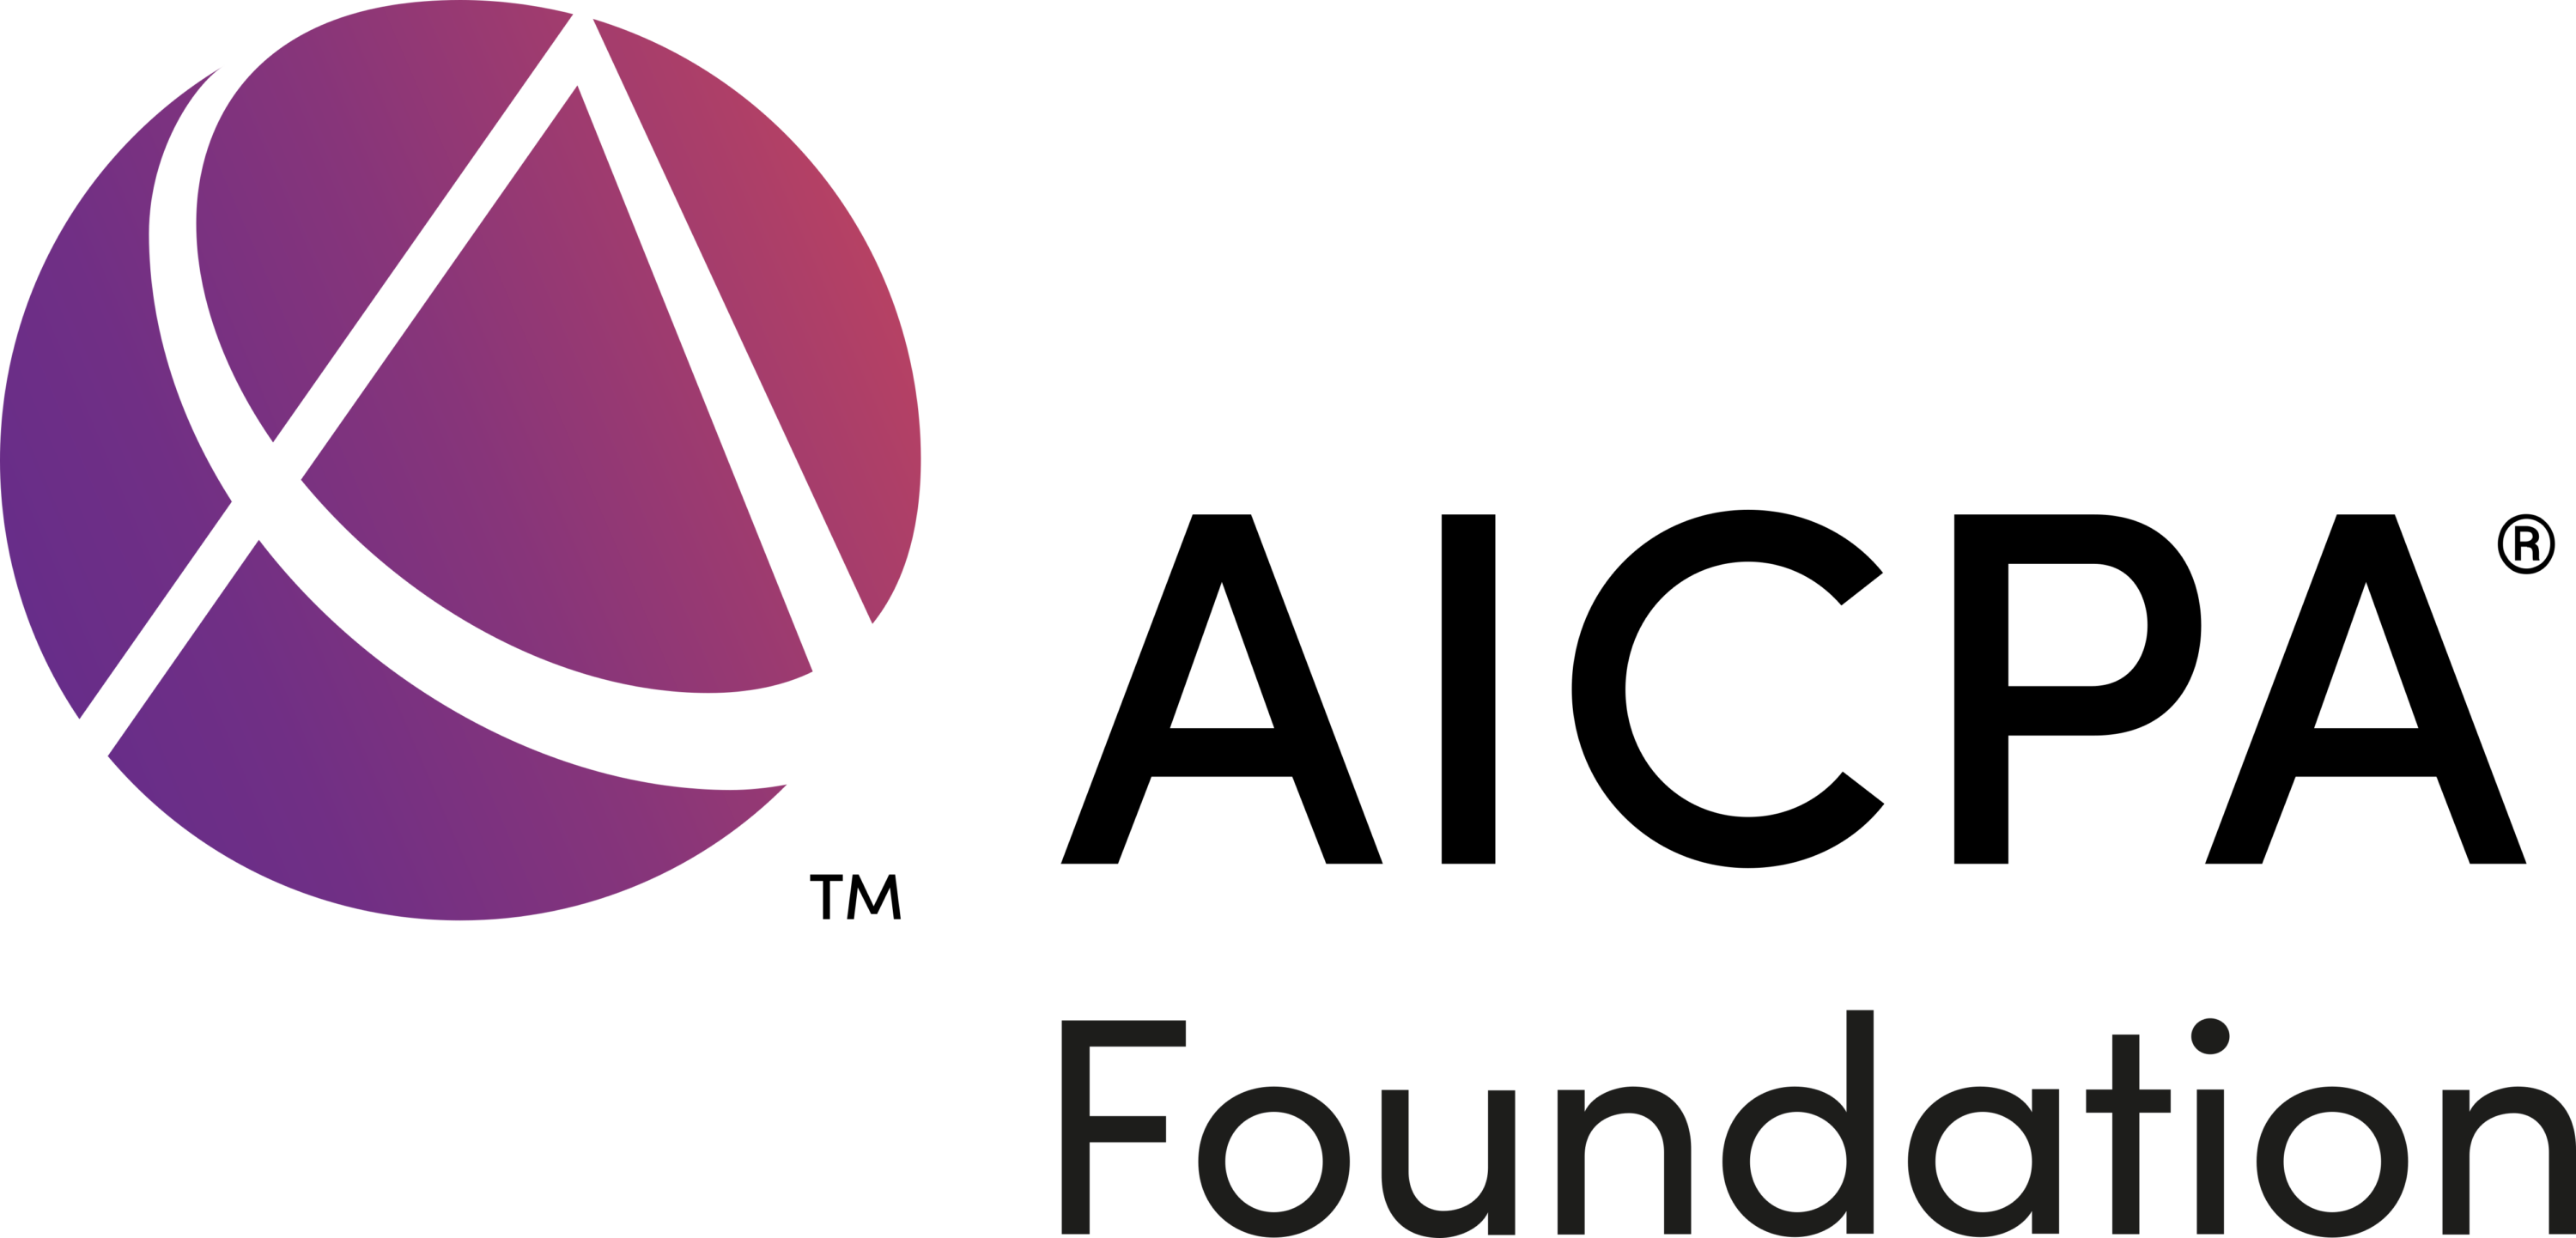 AICPA Foundation Logo